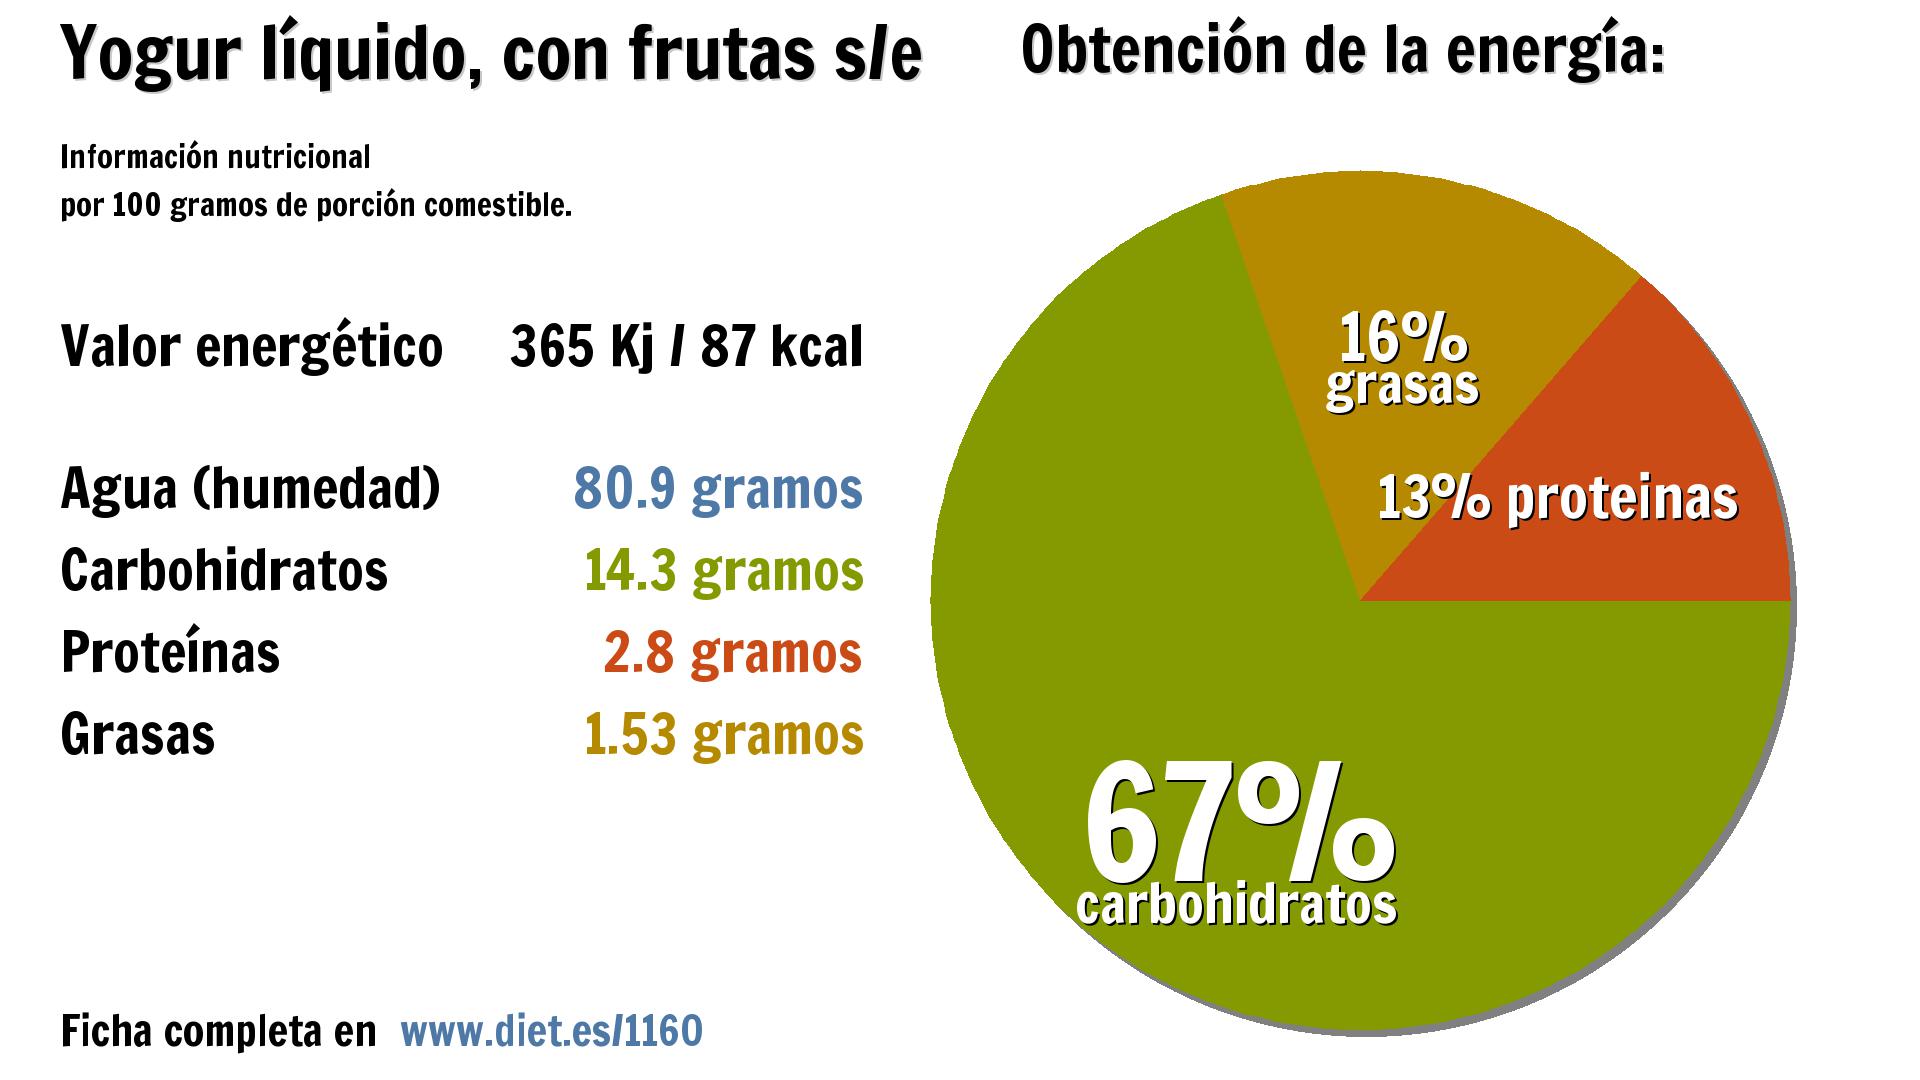 Yogur líquido, con frutas s/e: energía 365 Kj, agua 81 g., carbohidratos 14 g., proteínas 3 g. y grasas 2 g.